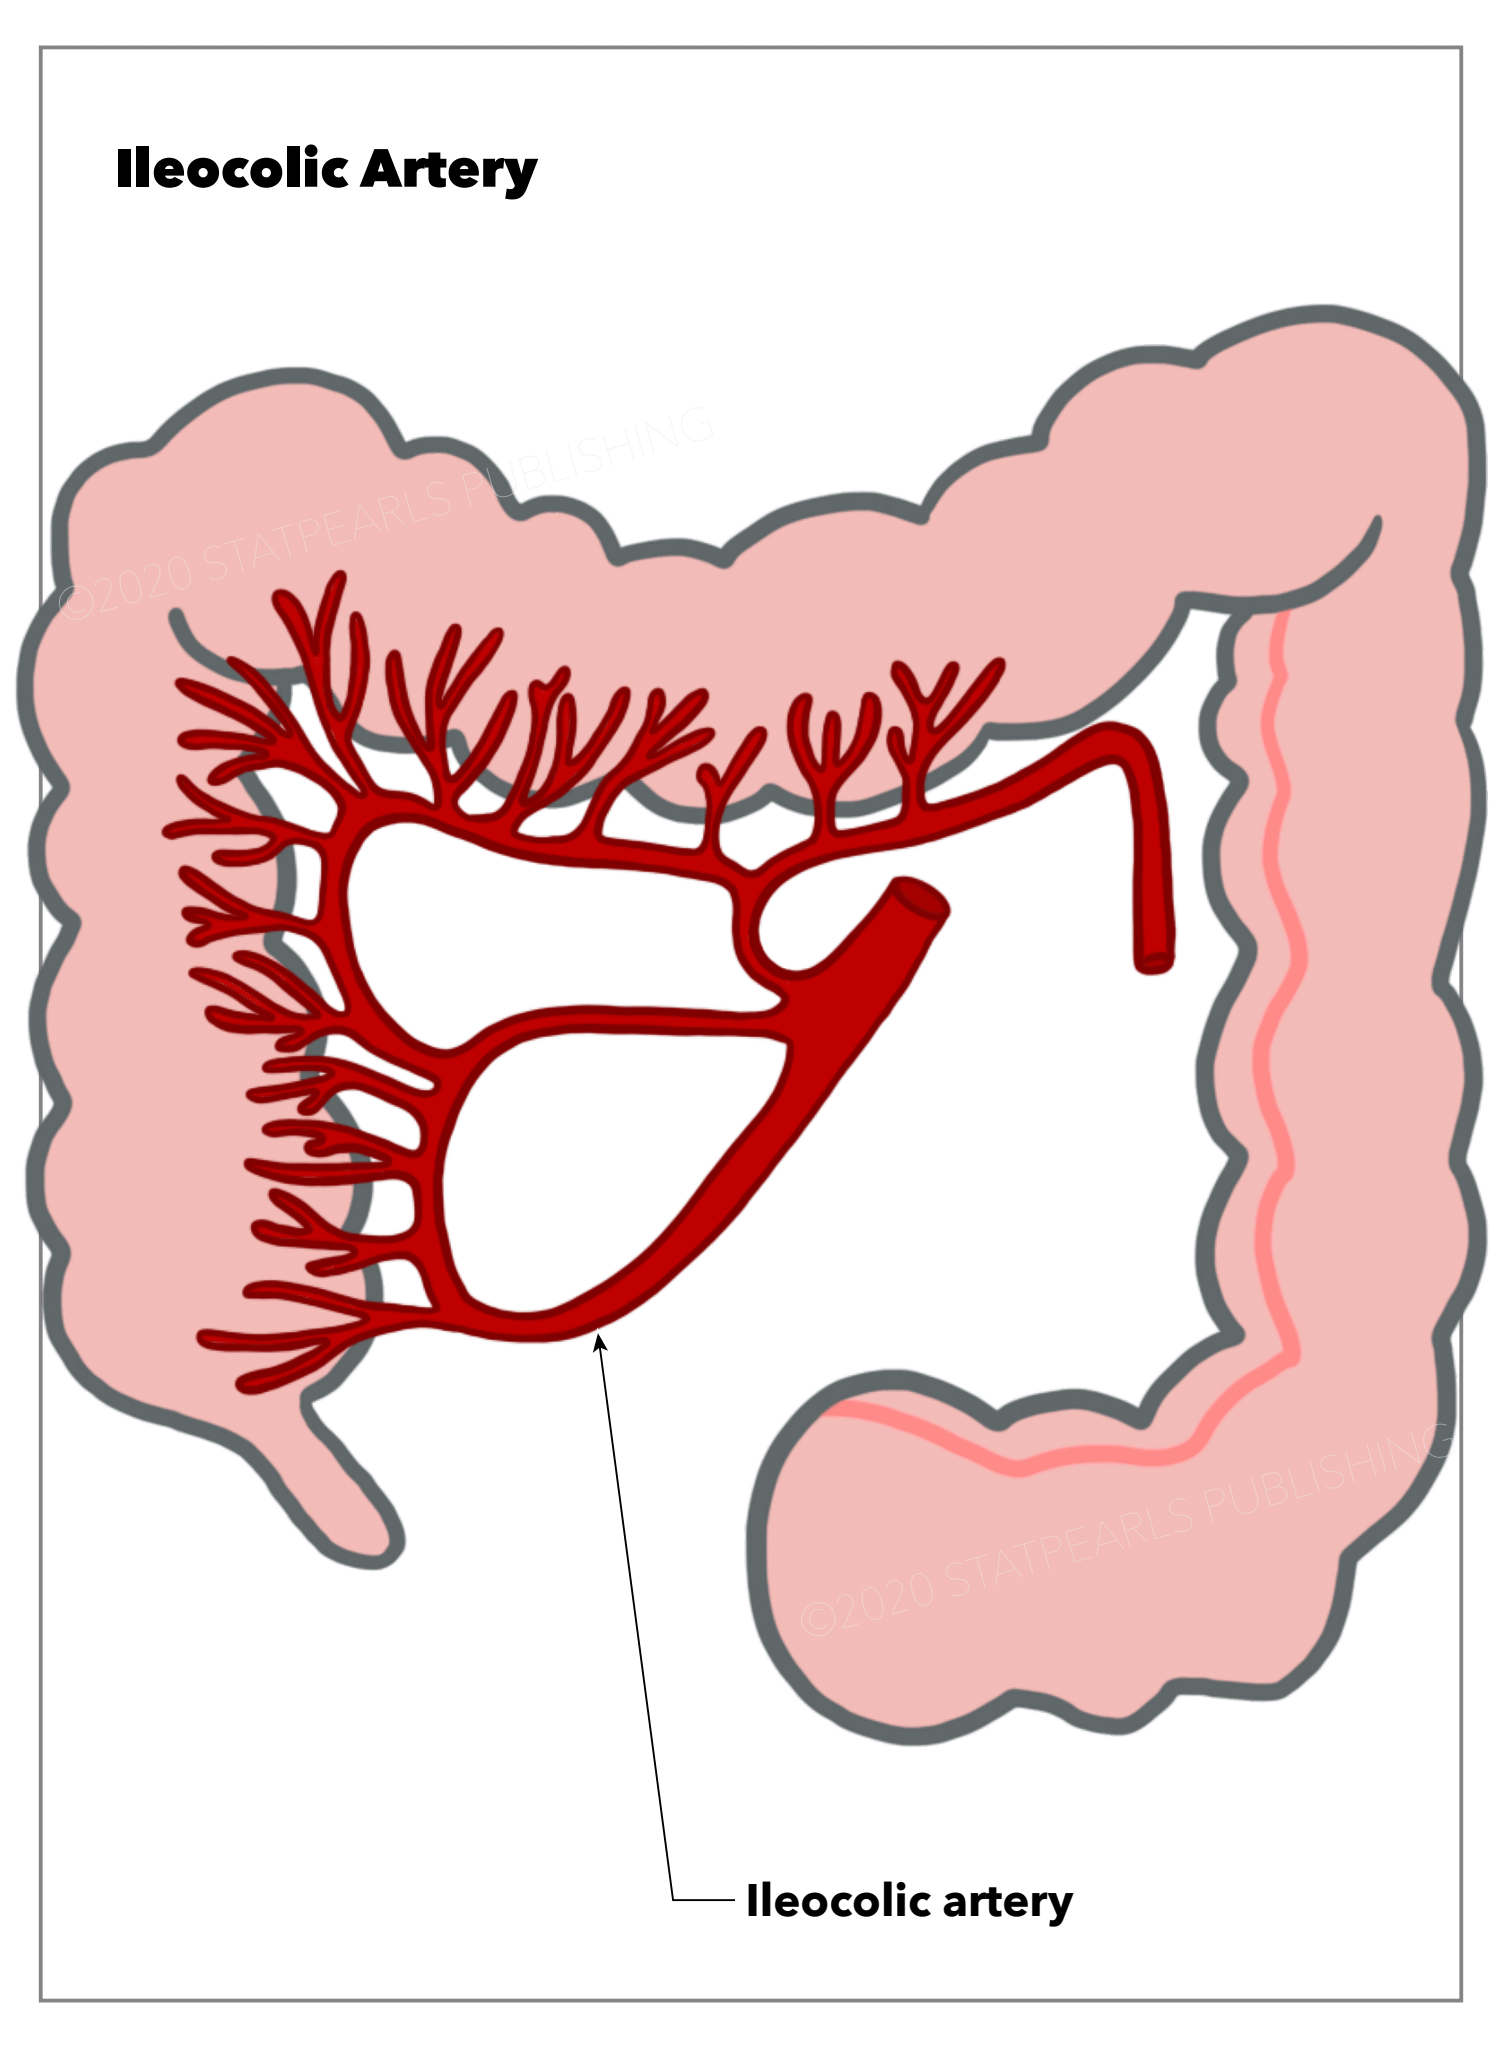 <p>Ileocolic Artery, Intestine</p>